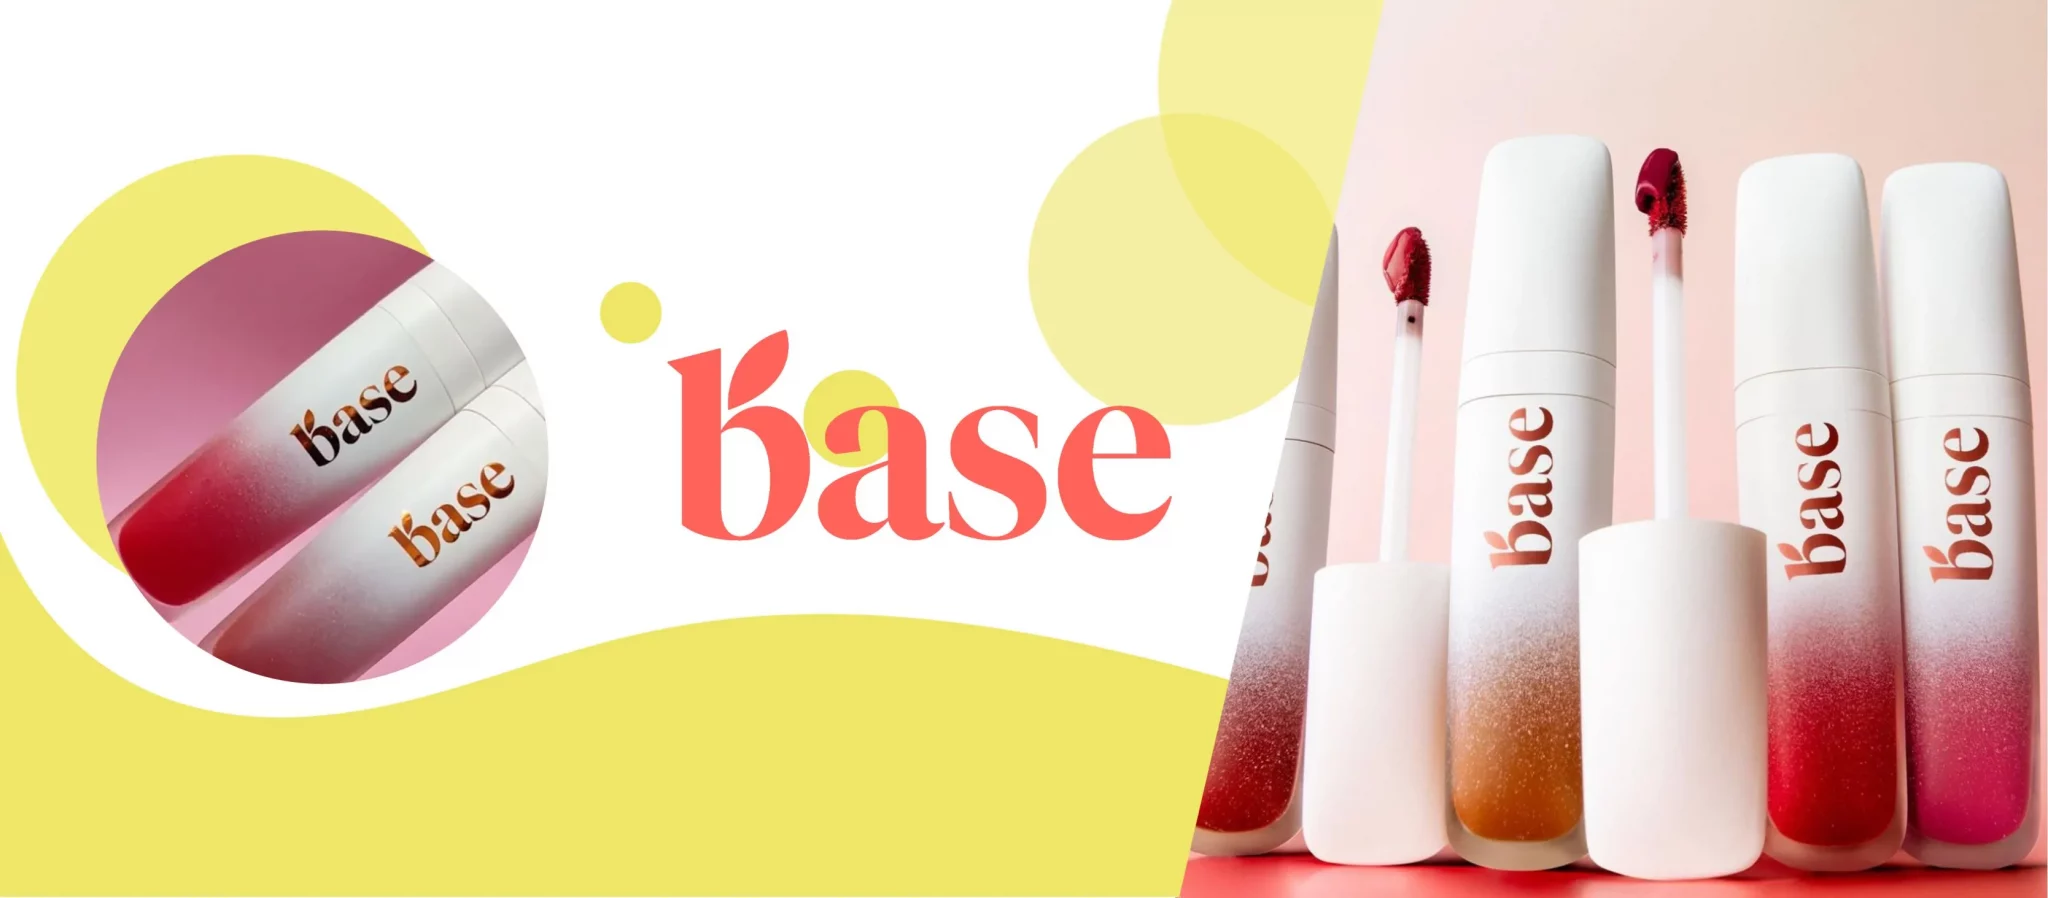 Base: Bagaimana Brand Ini Berhasil Memikat Influencer dengan Packaging yang Gemas